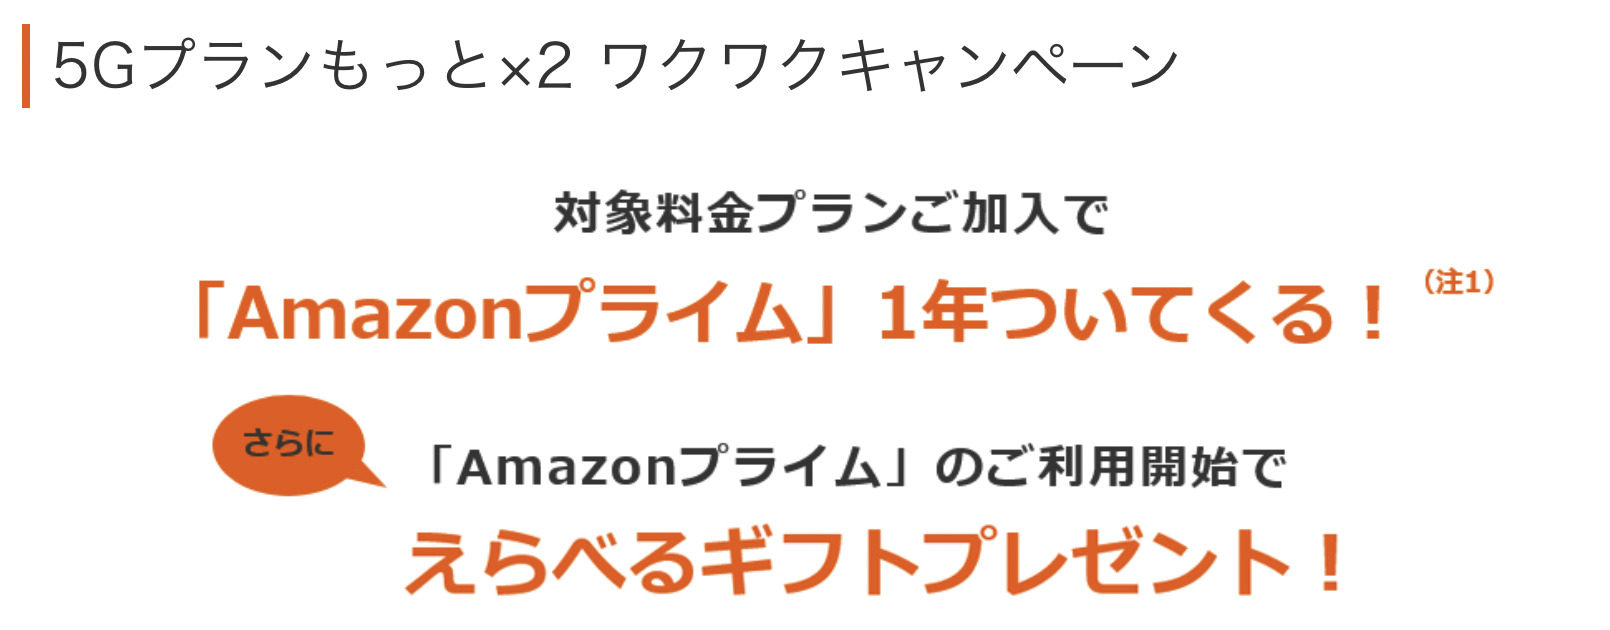 au Amazonプライム1年分とAmazonギフトカード2,000円分がもらえる 5Gプランもっと×2 ワクワクキャンペーン